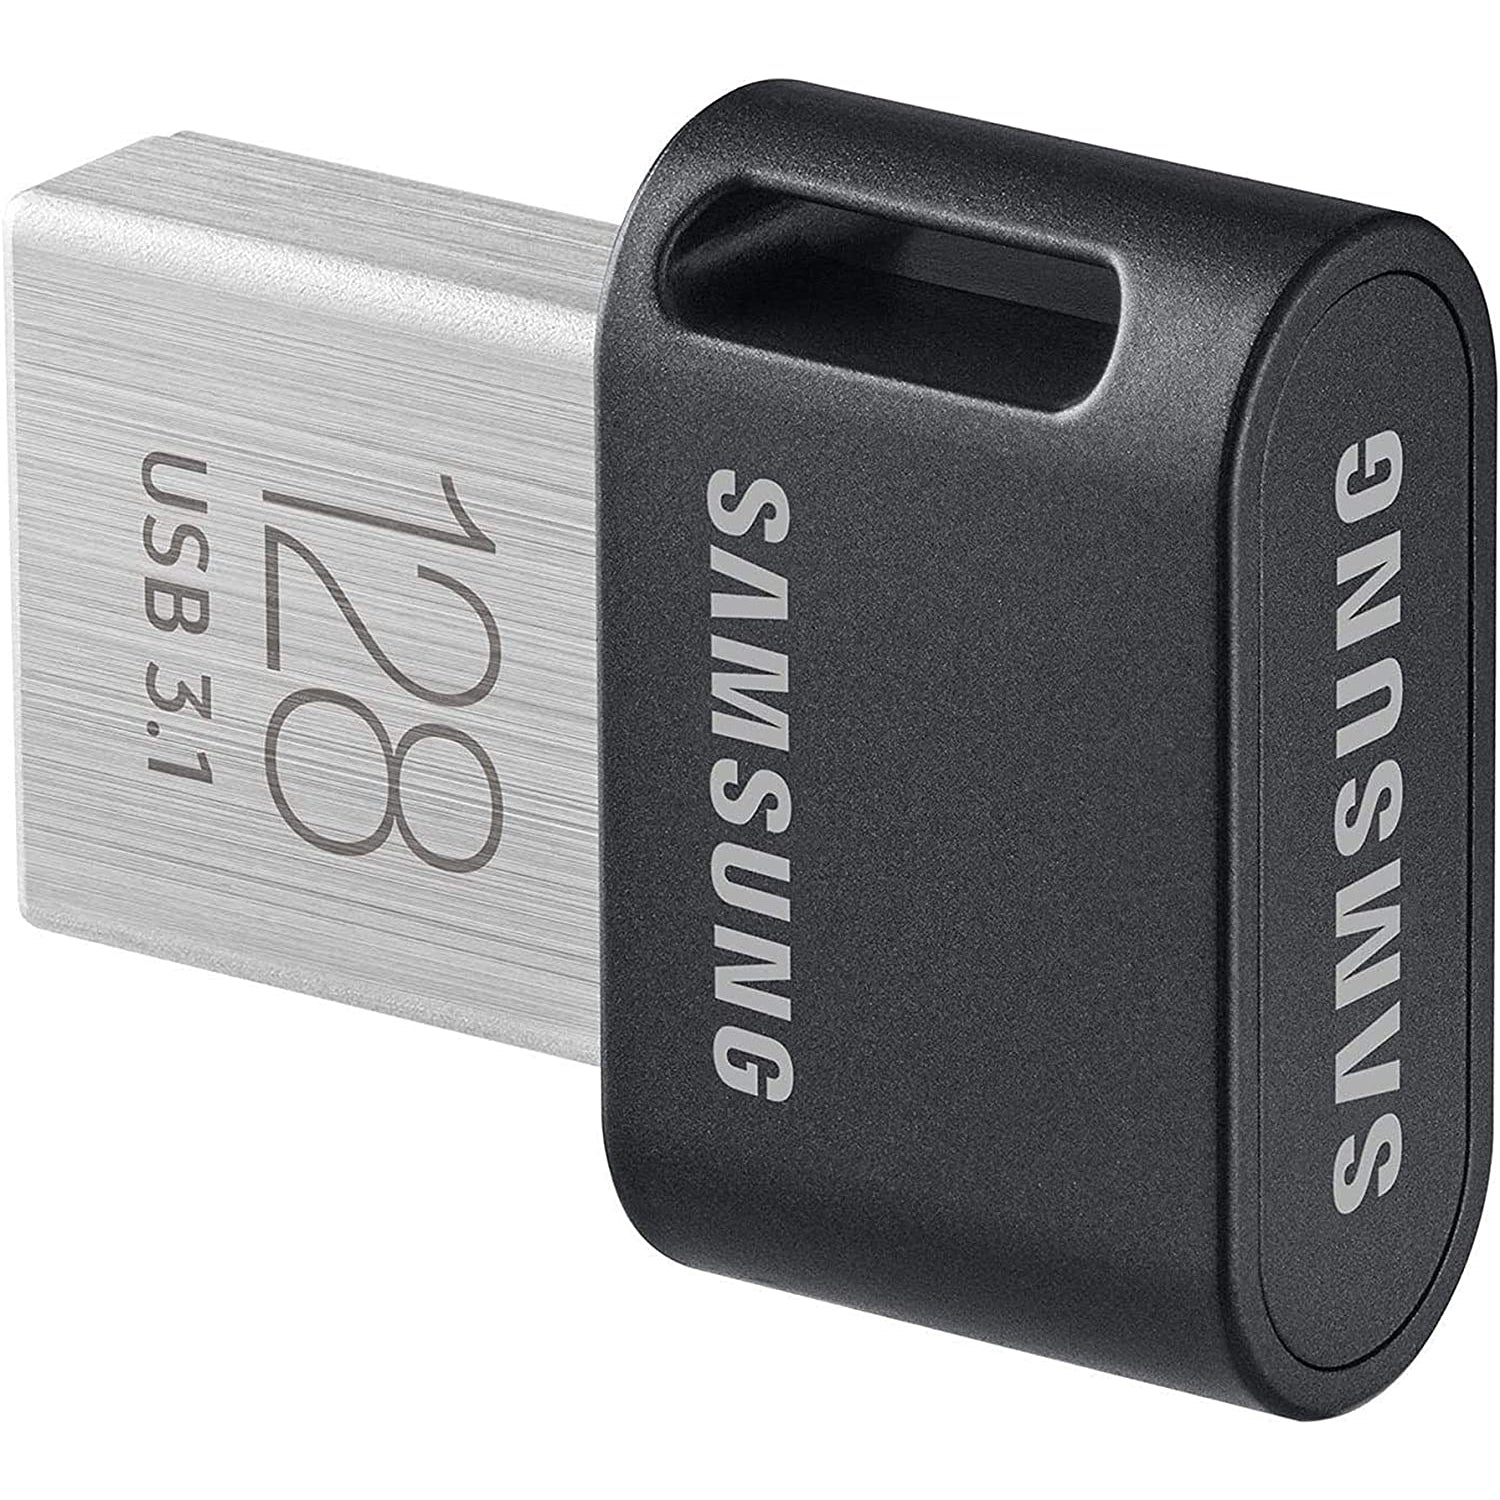 Samsung 128GB Fit Plus USB 3.1 - Black